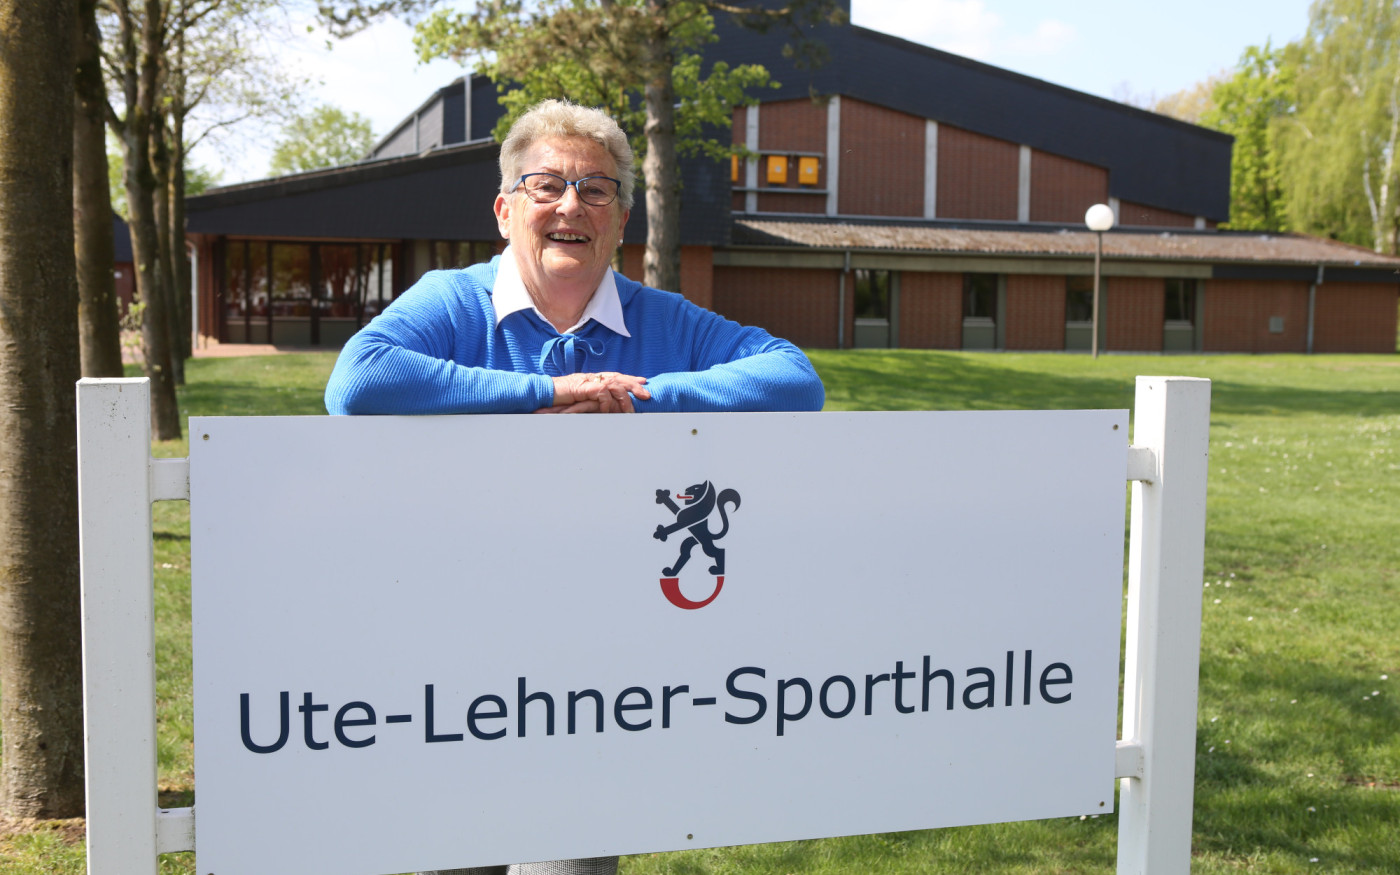 Wie eine Familie: Ute Lehner und der SSV - Die 81-Jährige baute den Kästorfer Verein mit auf, nun trägt eine Sporthalle ihren Namen